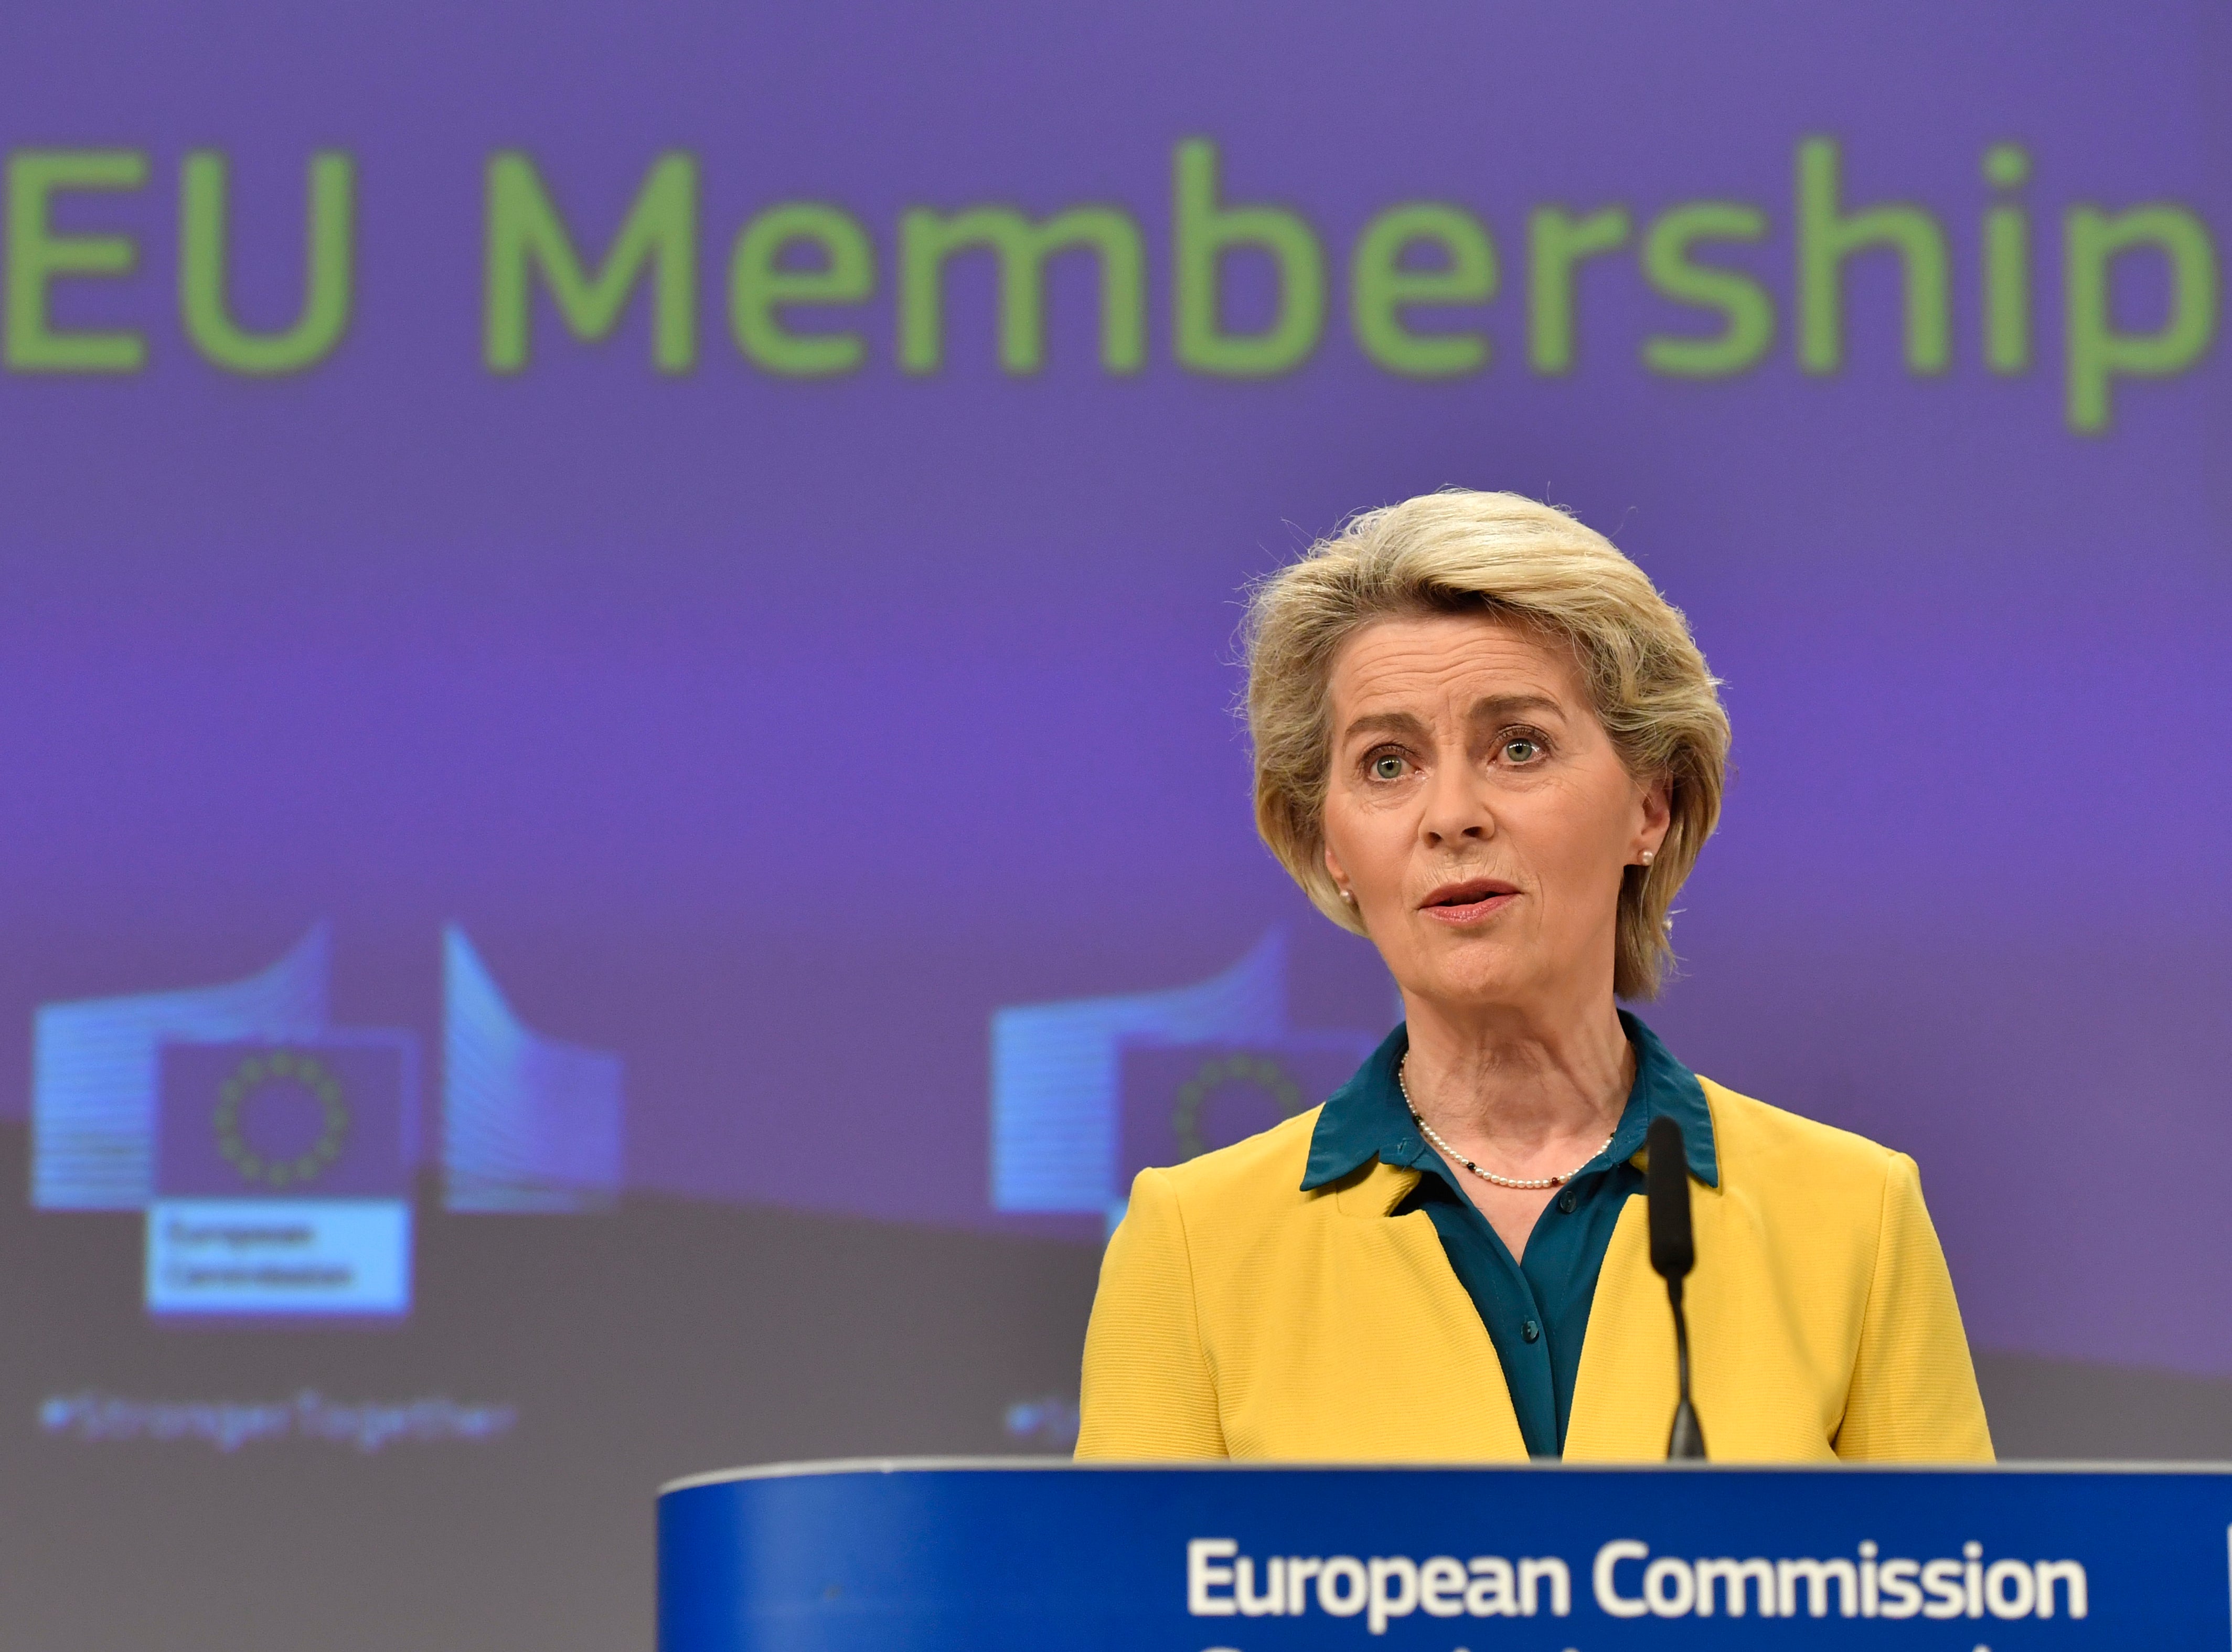 European Commission president Ursula von der Leyen confirmed that Ukraine will have candidate status